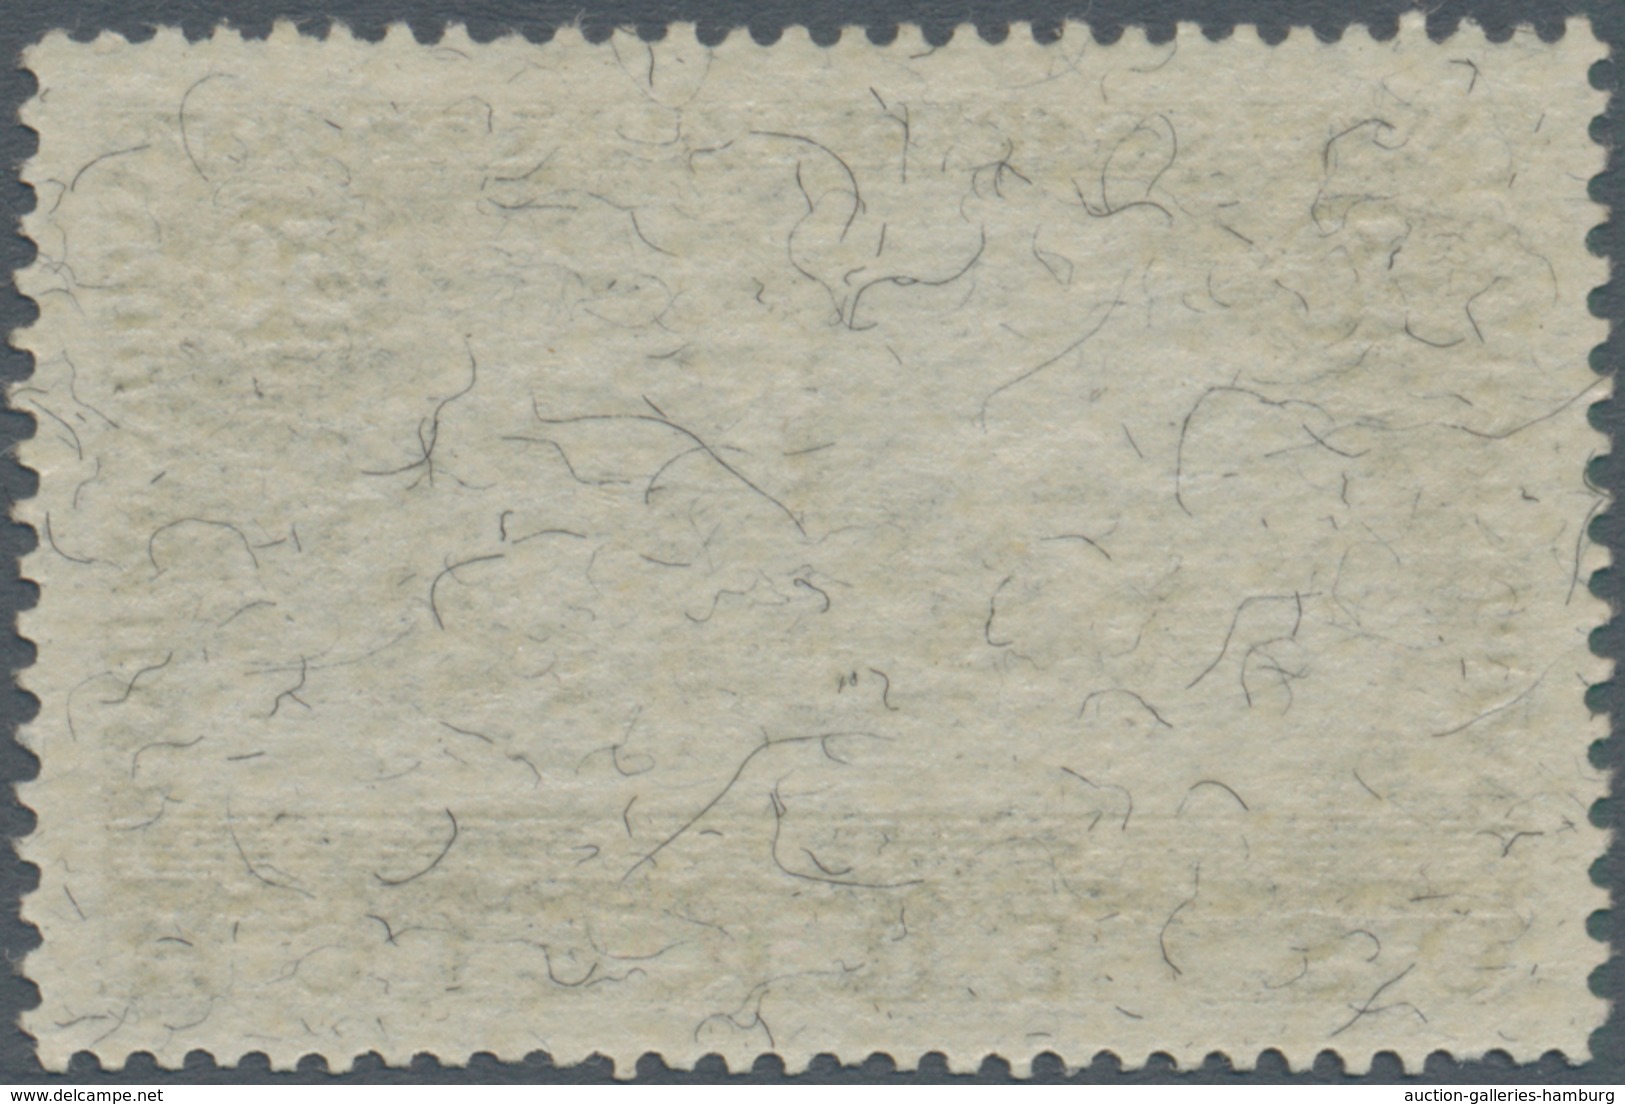 Österreich: 1933, WIPA Faserpapier Postfrisch In Unsignierter Prachterhaltung, Fotoatteste Ferchenba - Nuevos